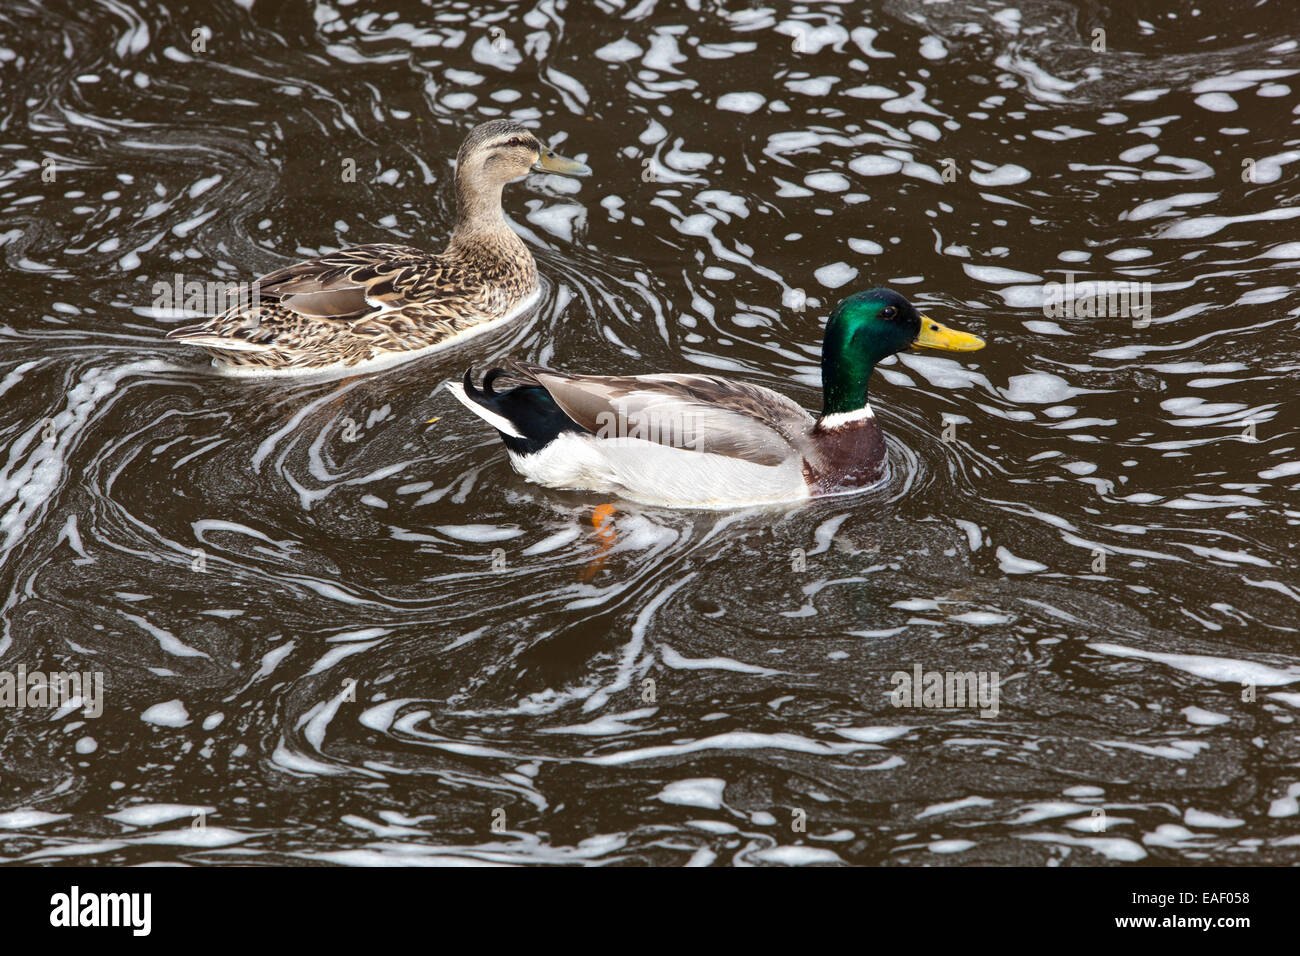 Mallard duck nel fiume di schiumatura, fiume inquinato, inquinamento animali Foto Stock